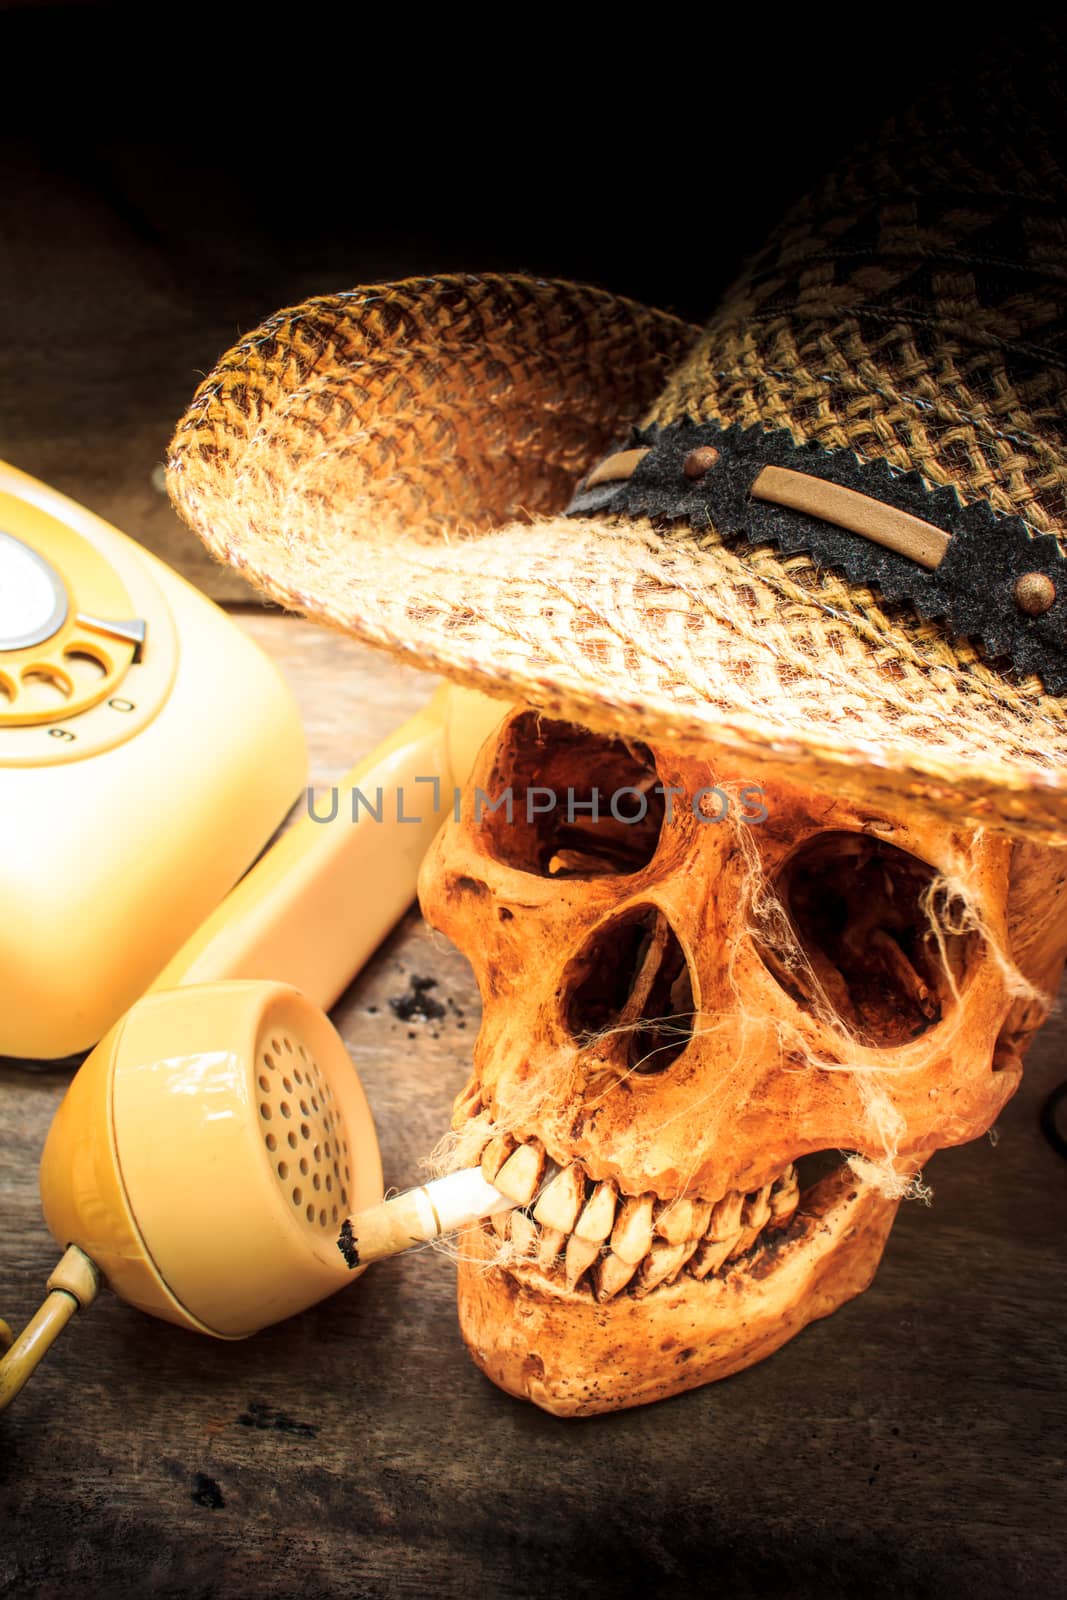 Skull with cigarette, still life. by Tachjang